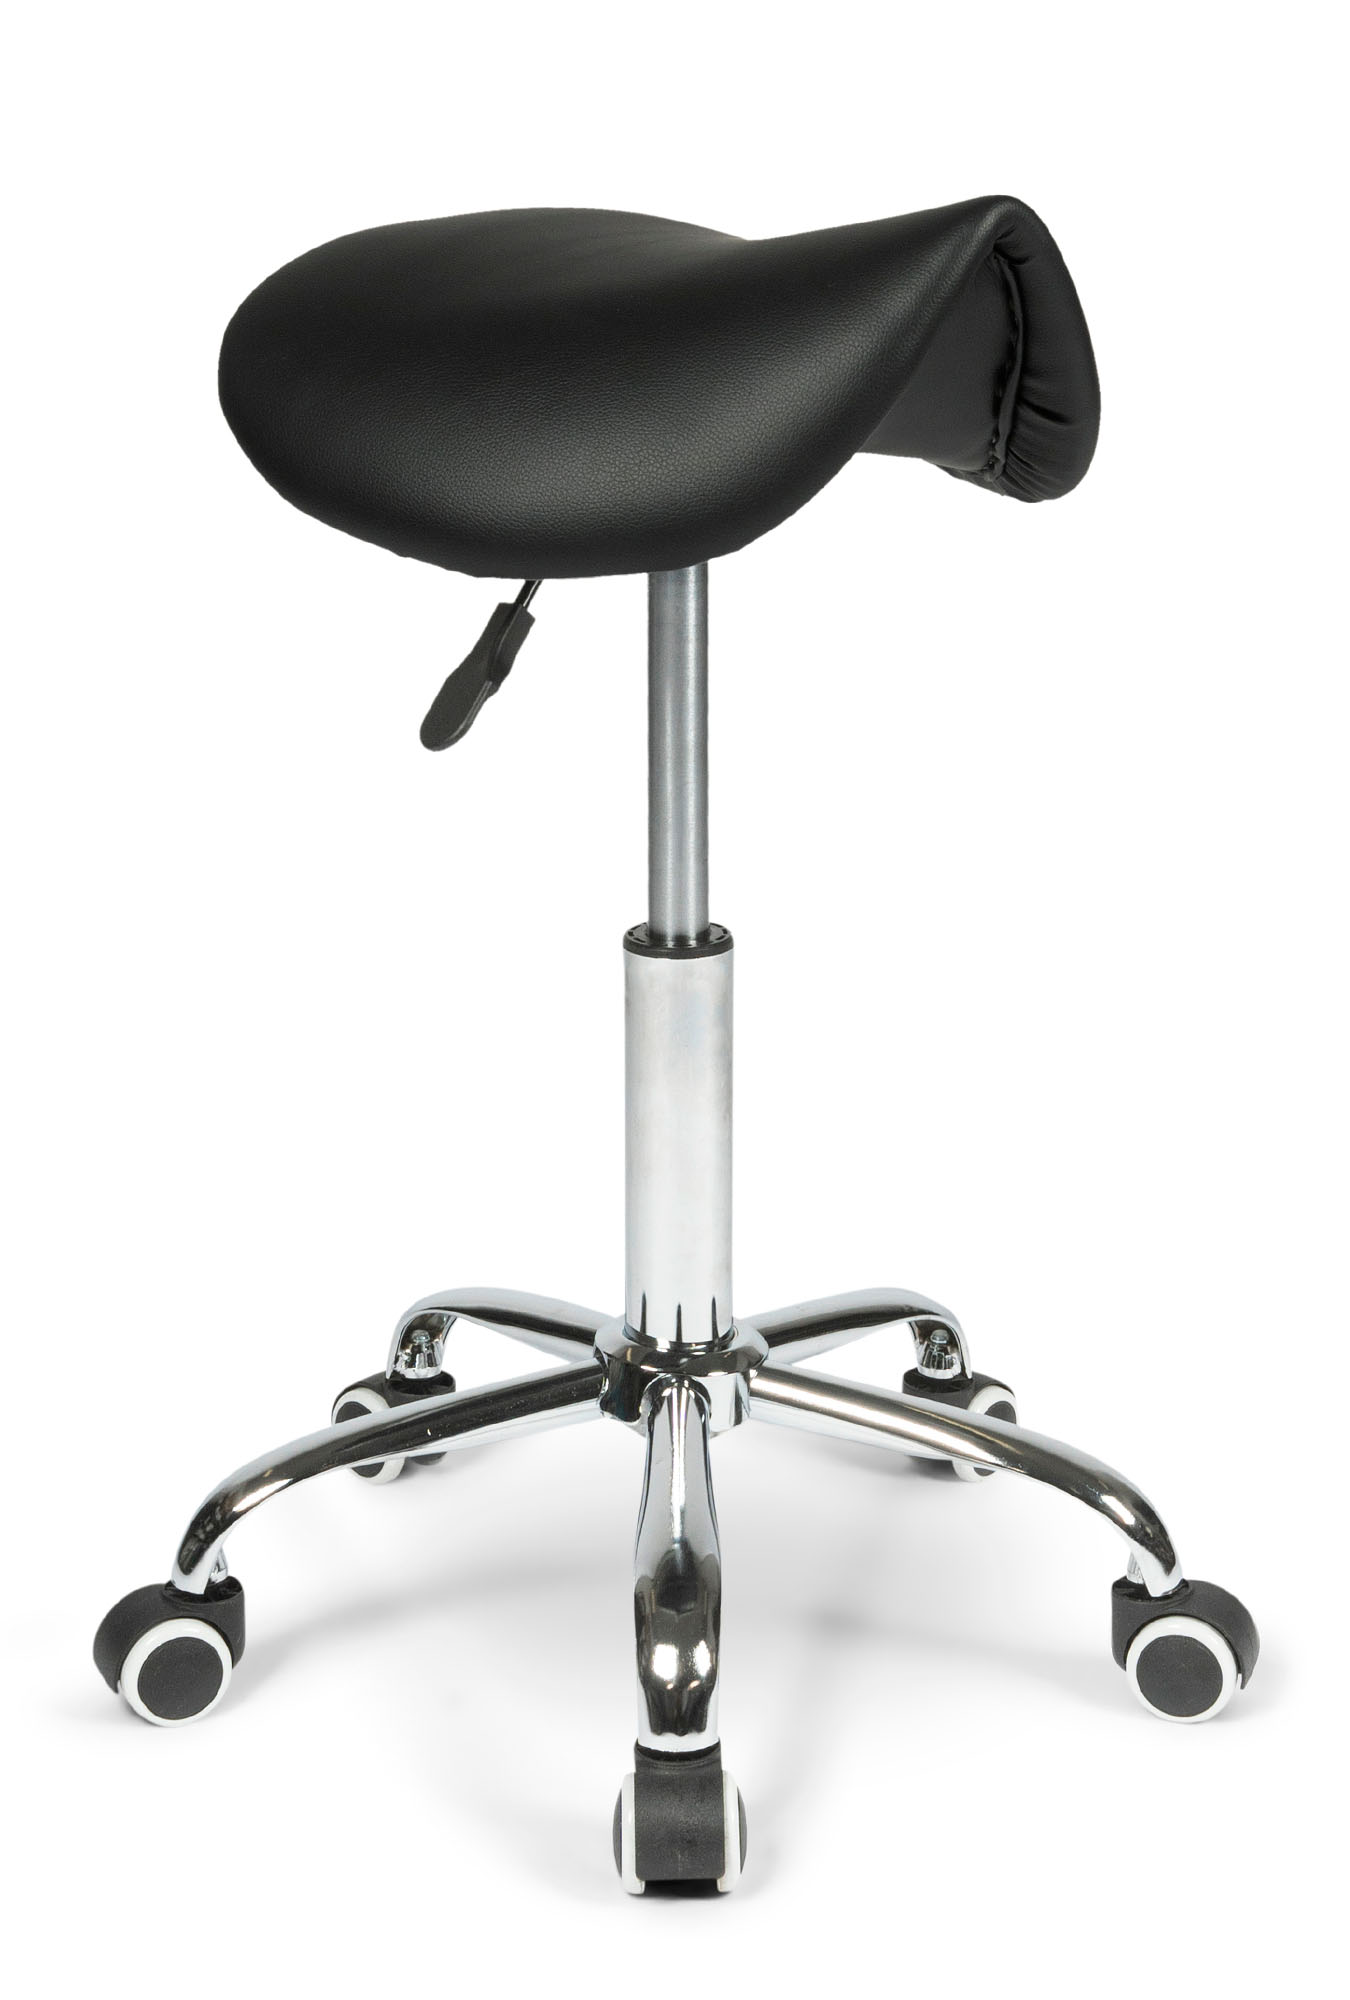 dunimed ergonomic saddle stool for sale